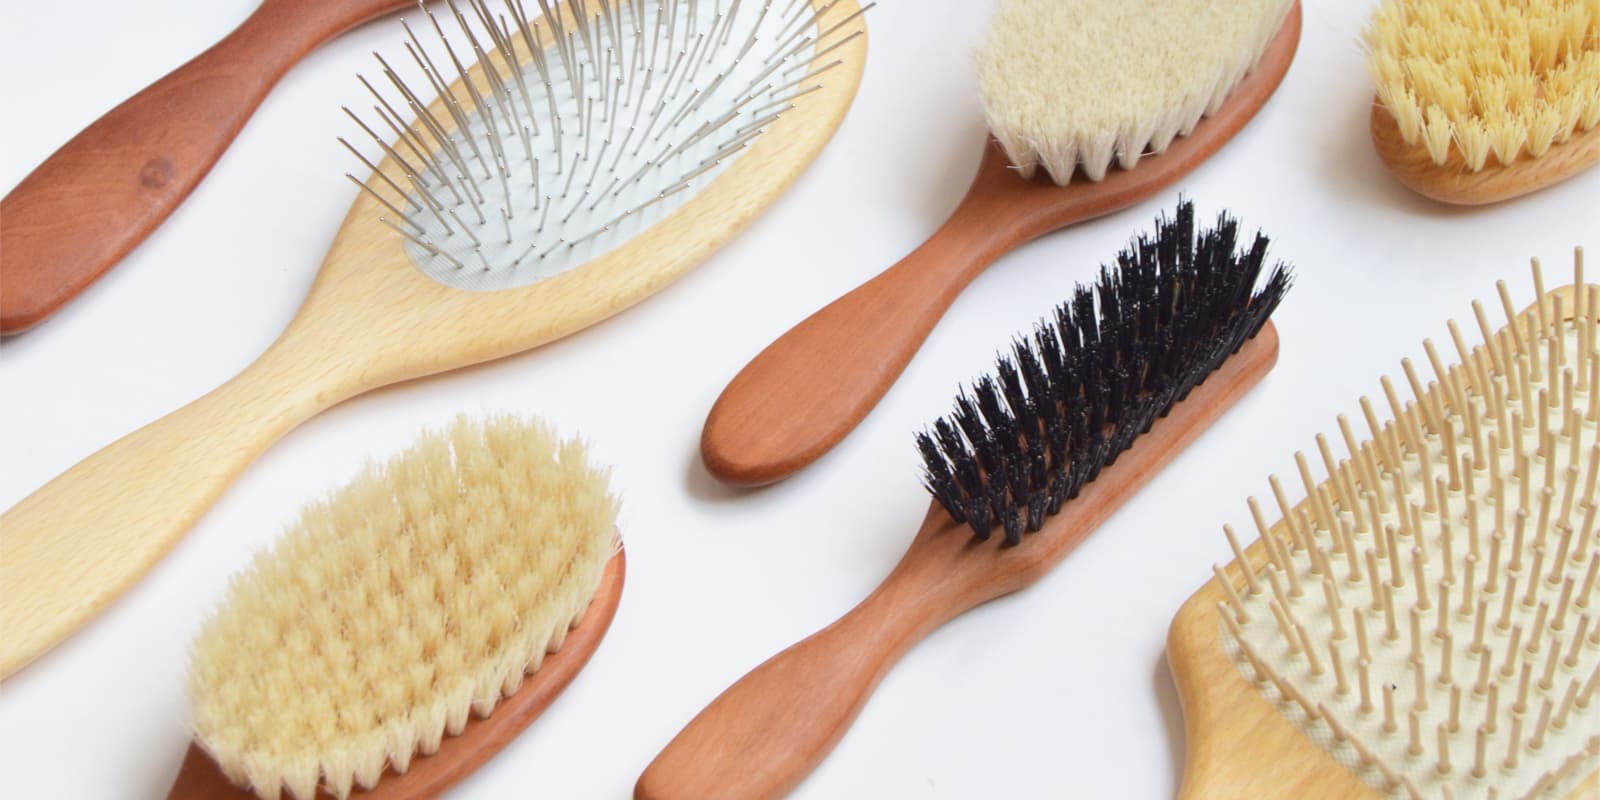 Cepillos de madera para el cabello: ventajas y beneficios. Blog de